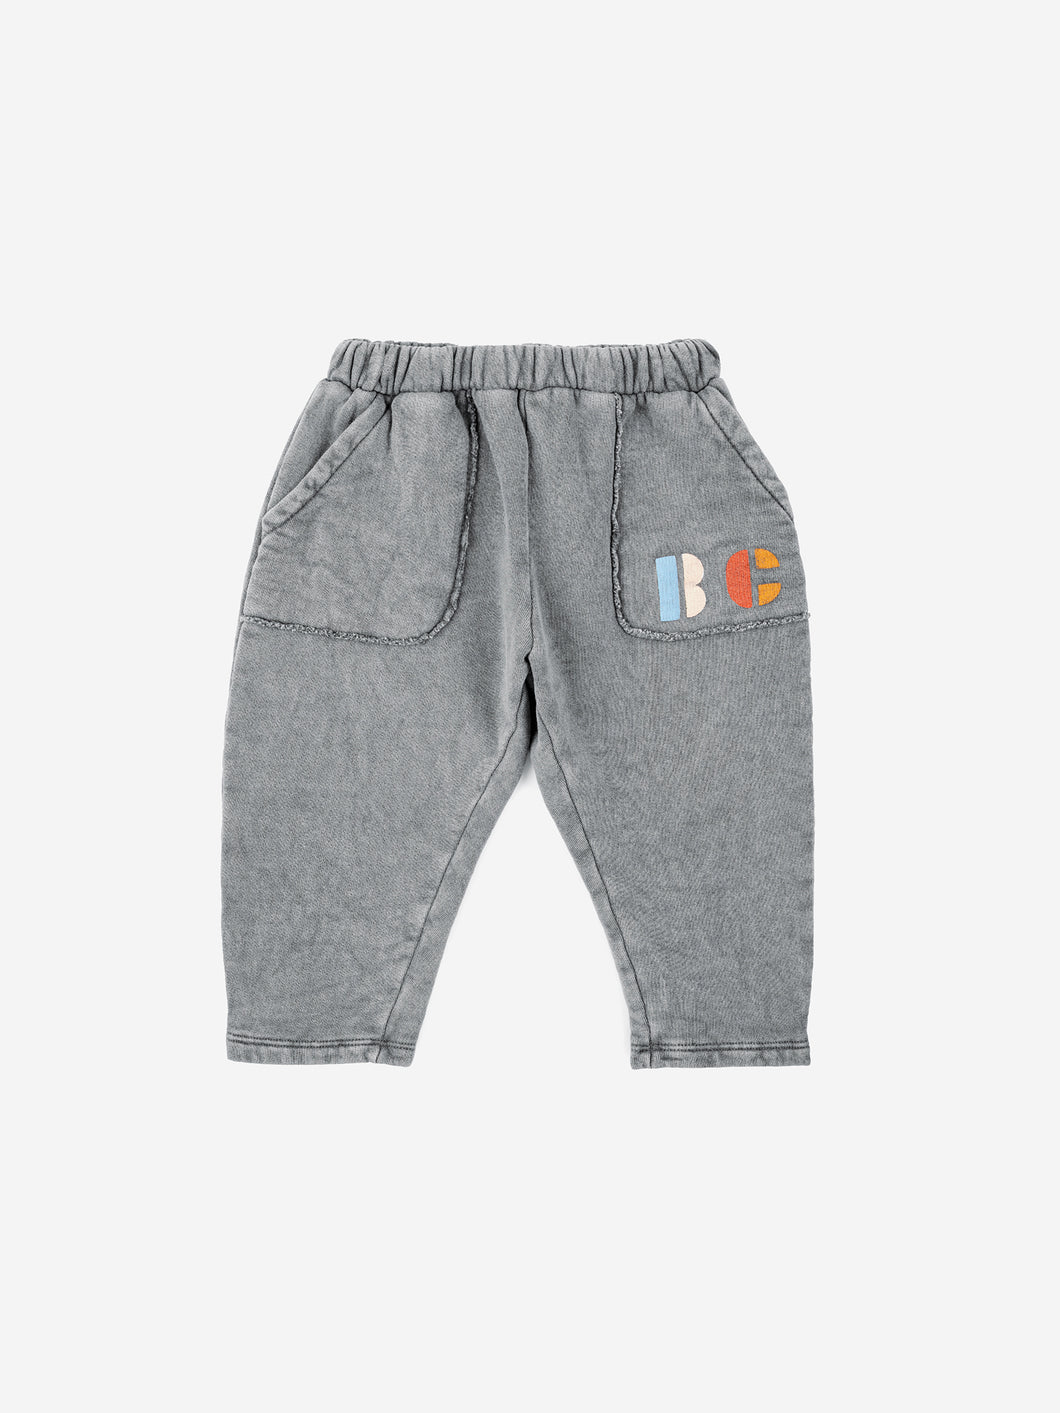 BOBOCHOSES pantaloni bambino in felpa colore grigio